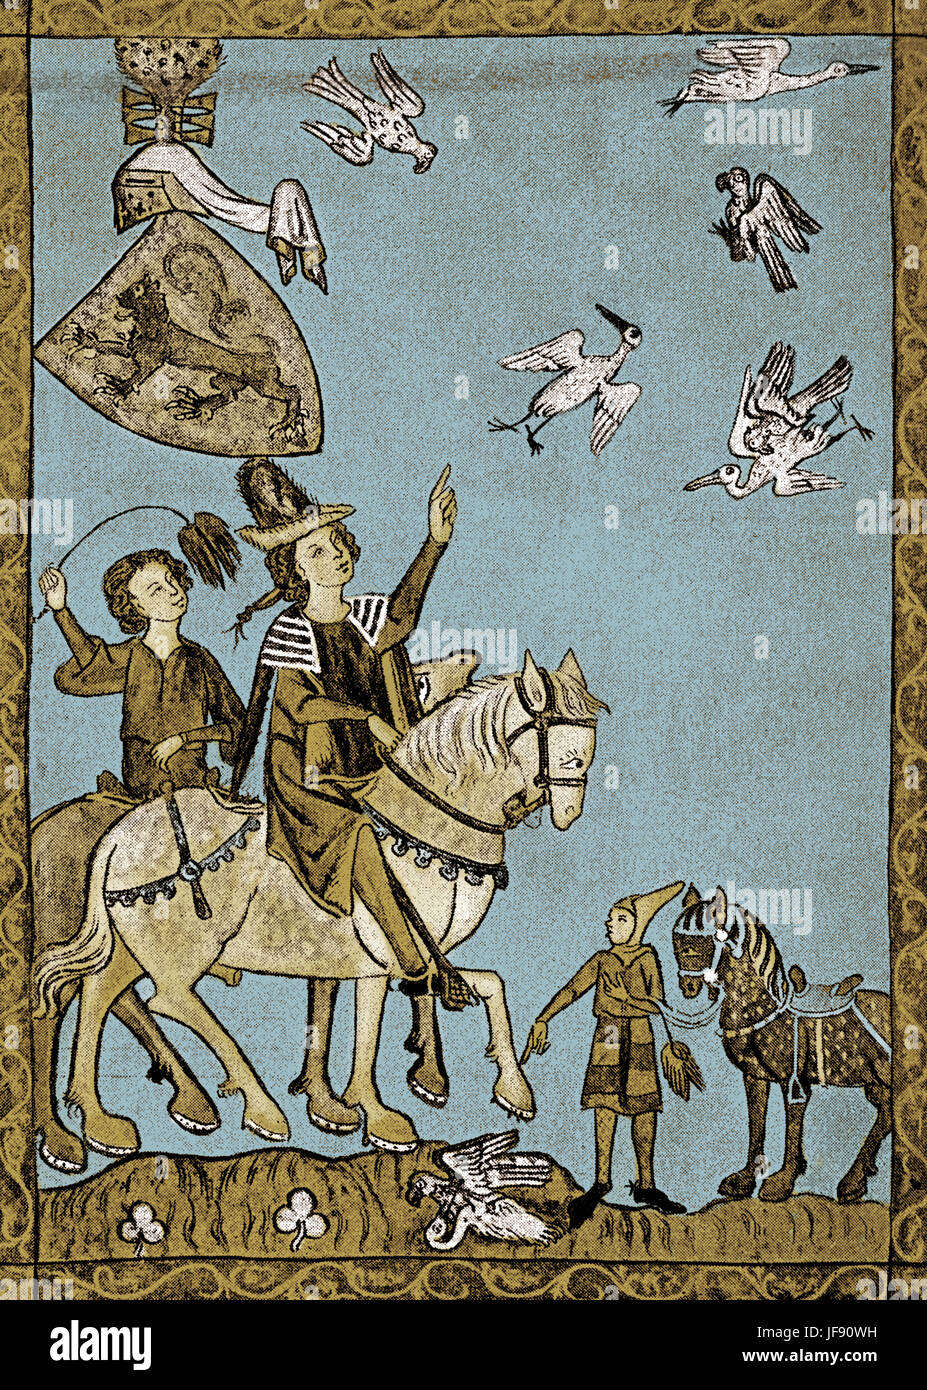 Mittelalterliche Falknerei - Jagd Federwild mit Falken, Miniaturmalerei, Heidelberg, c. 1300 Stockfoto